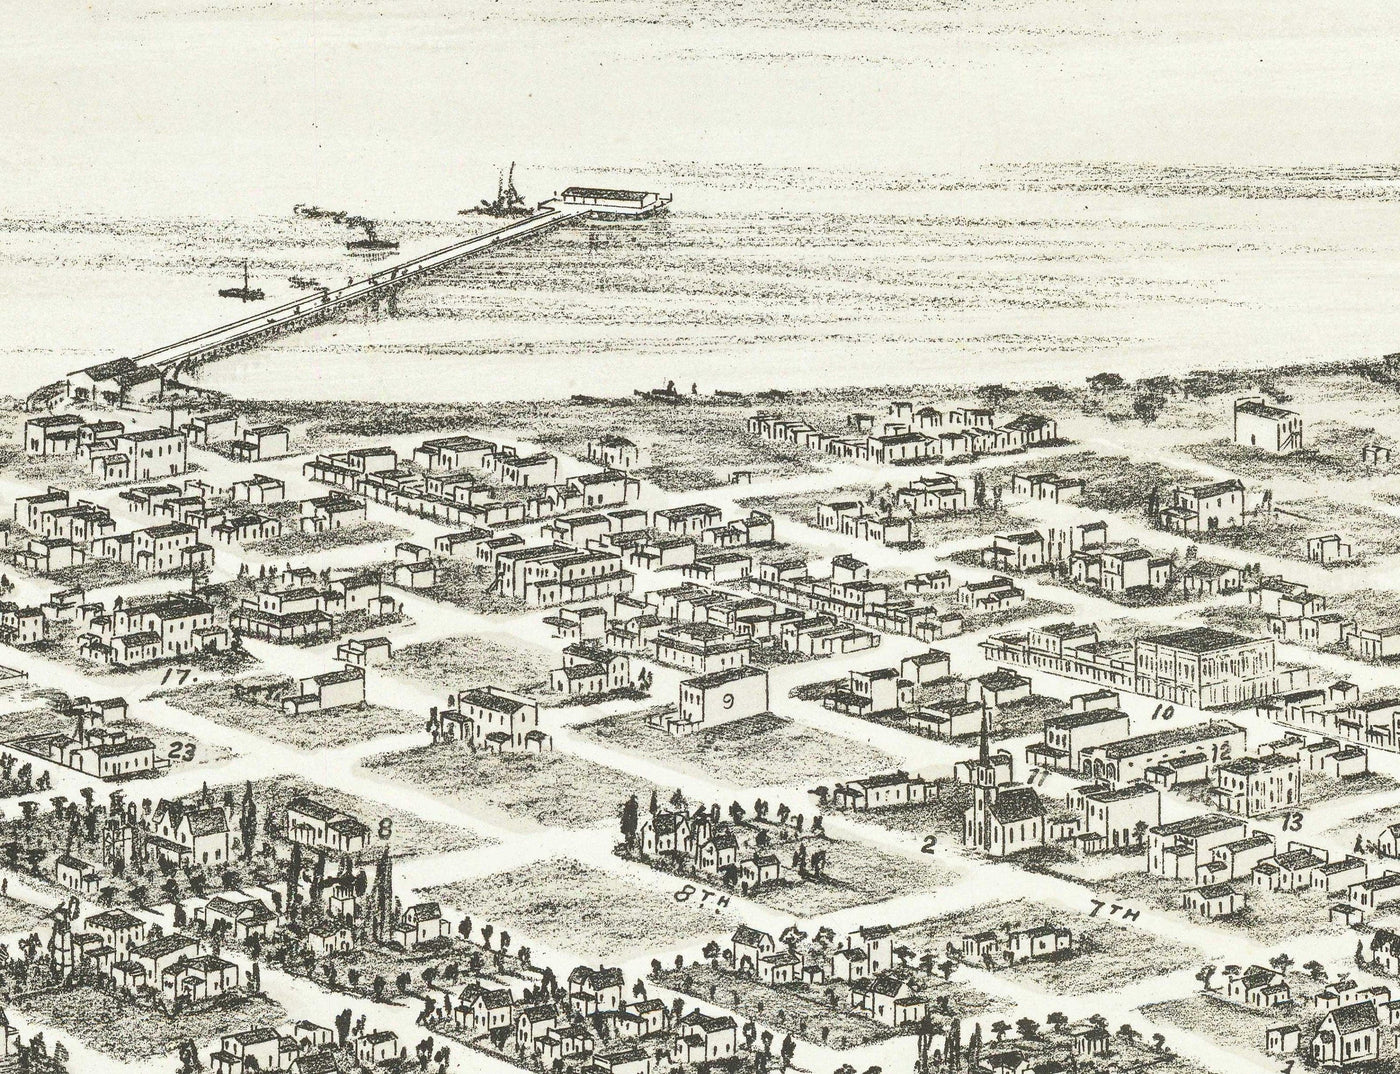 Seltene alte Karte von San Diego von Eli Sheldon Glover, 1876 - Vögelauge, Downtown Oldtown, East Village, Cortez Hill